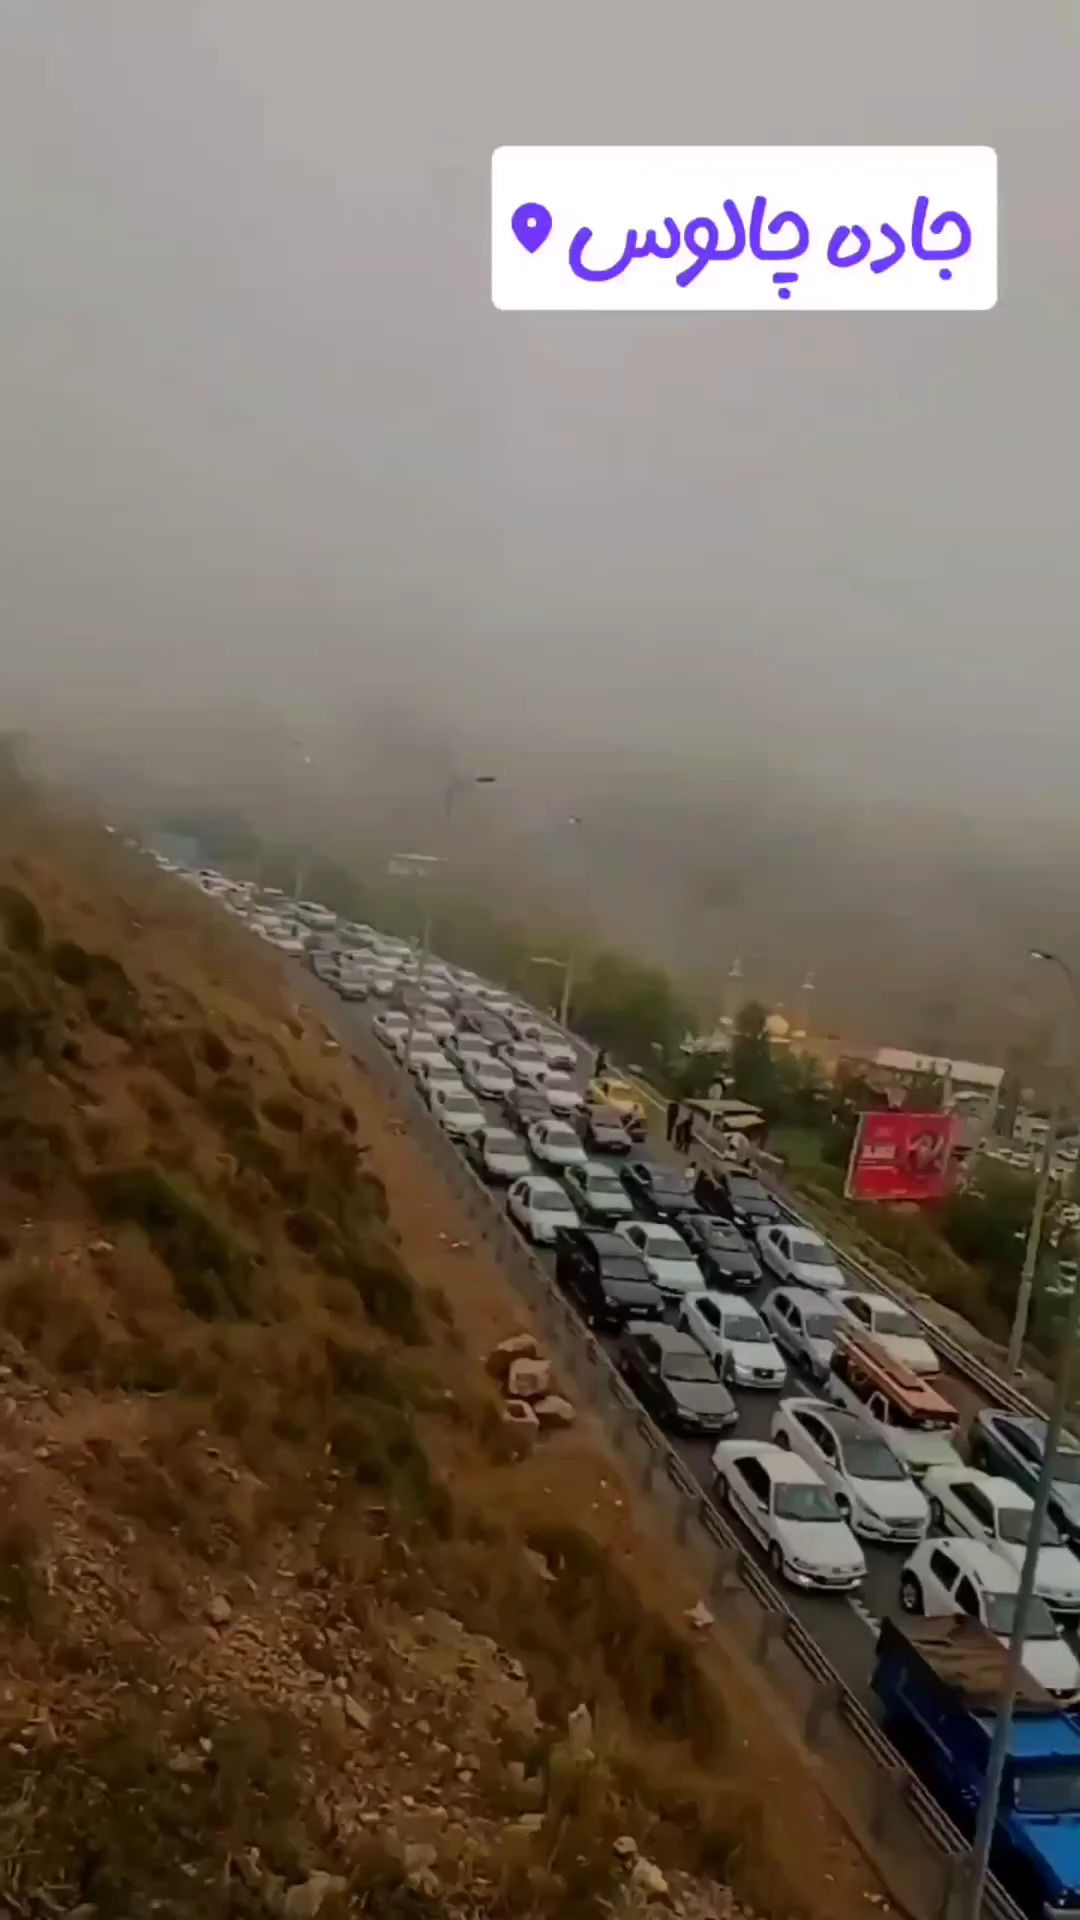 ویدئویی از وضعیت عجیب مردم در جاده چالوس!